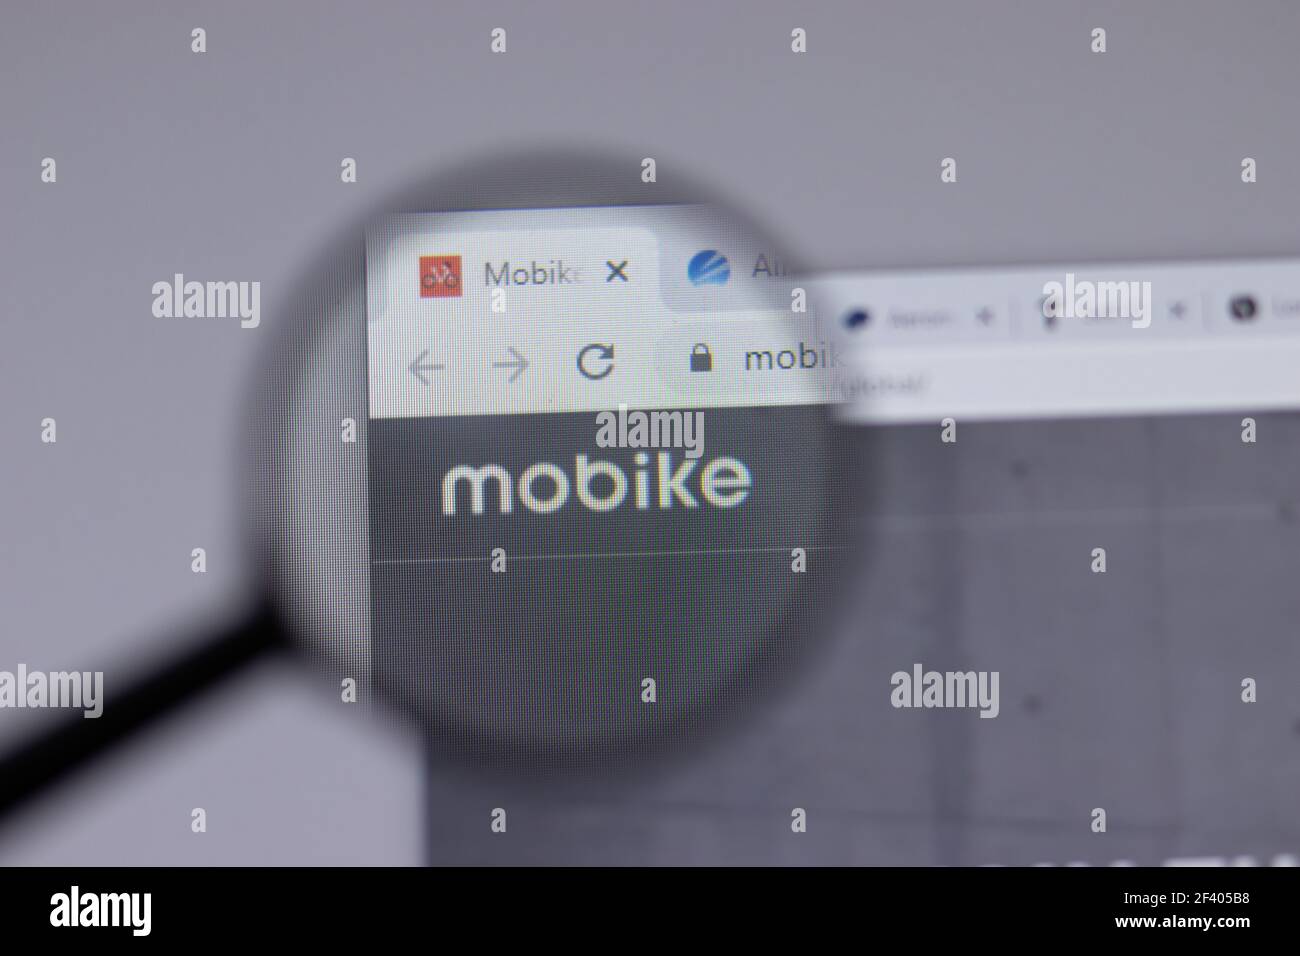 Nueva York, EE.UU. - 18 de marzo de 2021: MOBIKE logotipo de la empresa icono en el sitio web, editorial ilustrativa Foto de stock